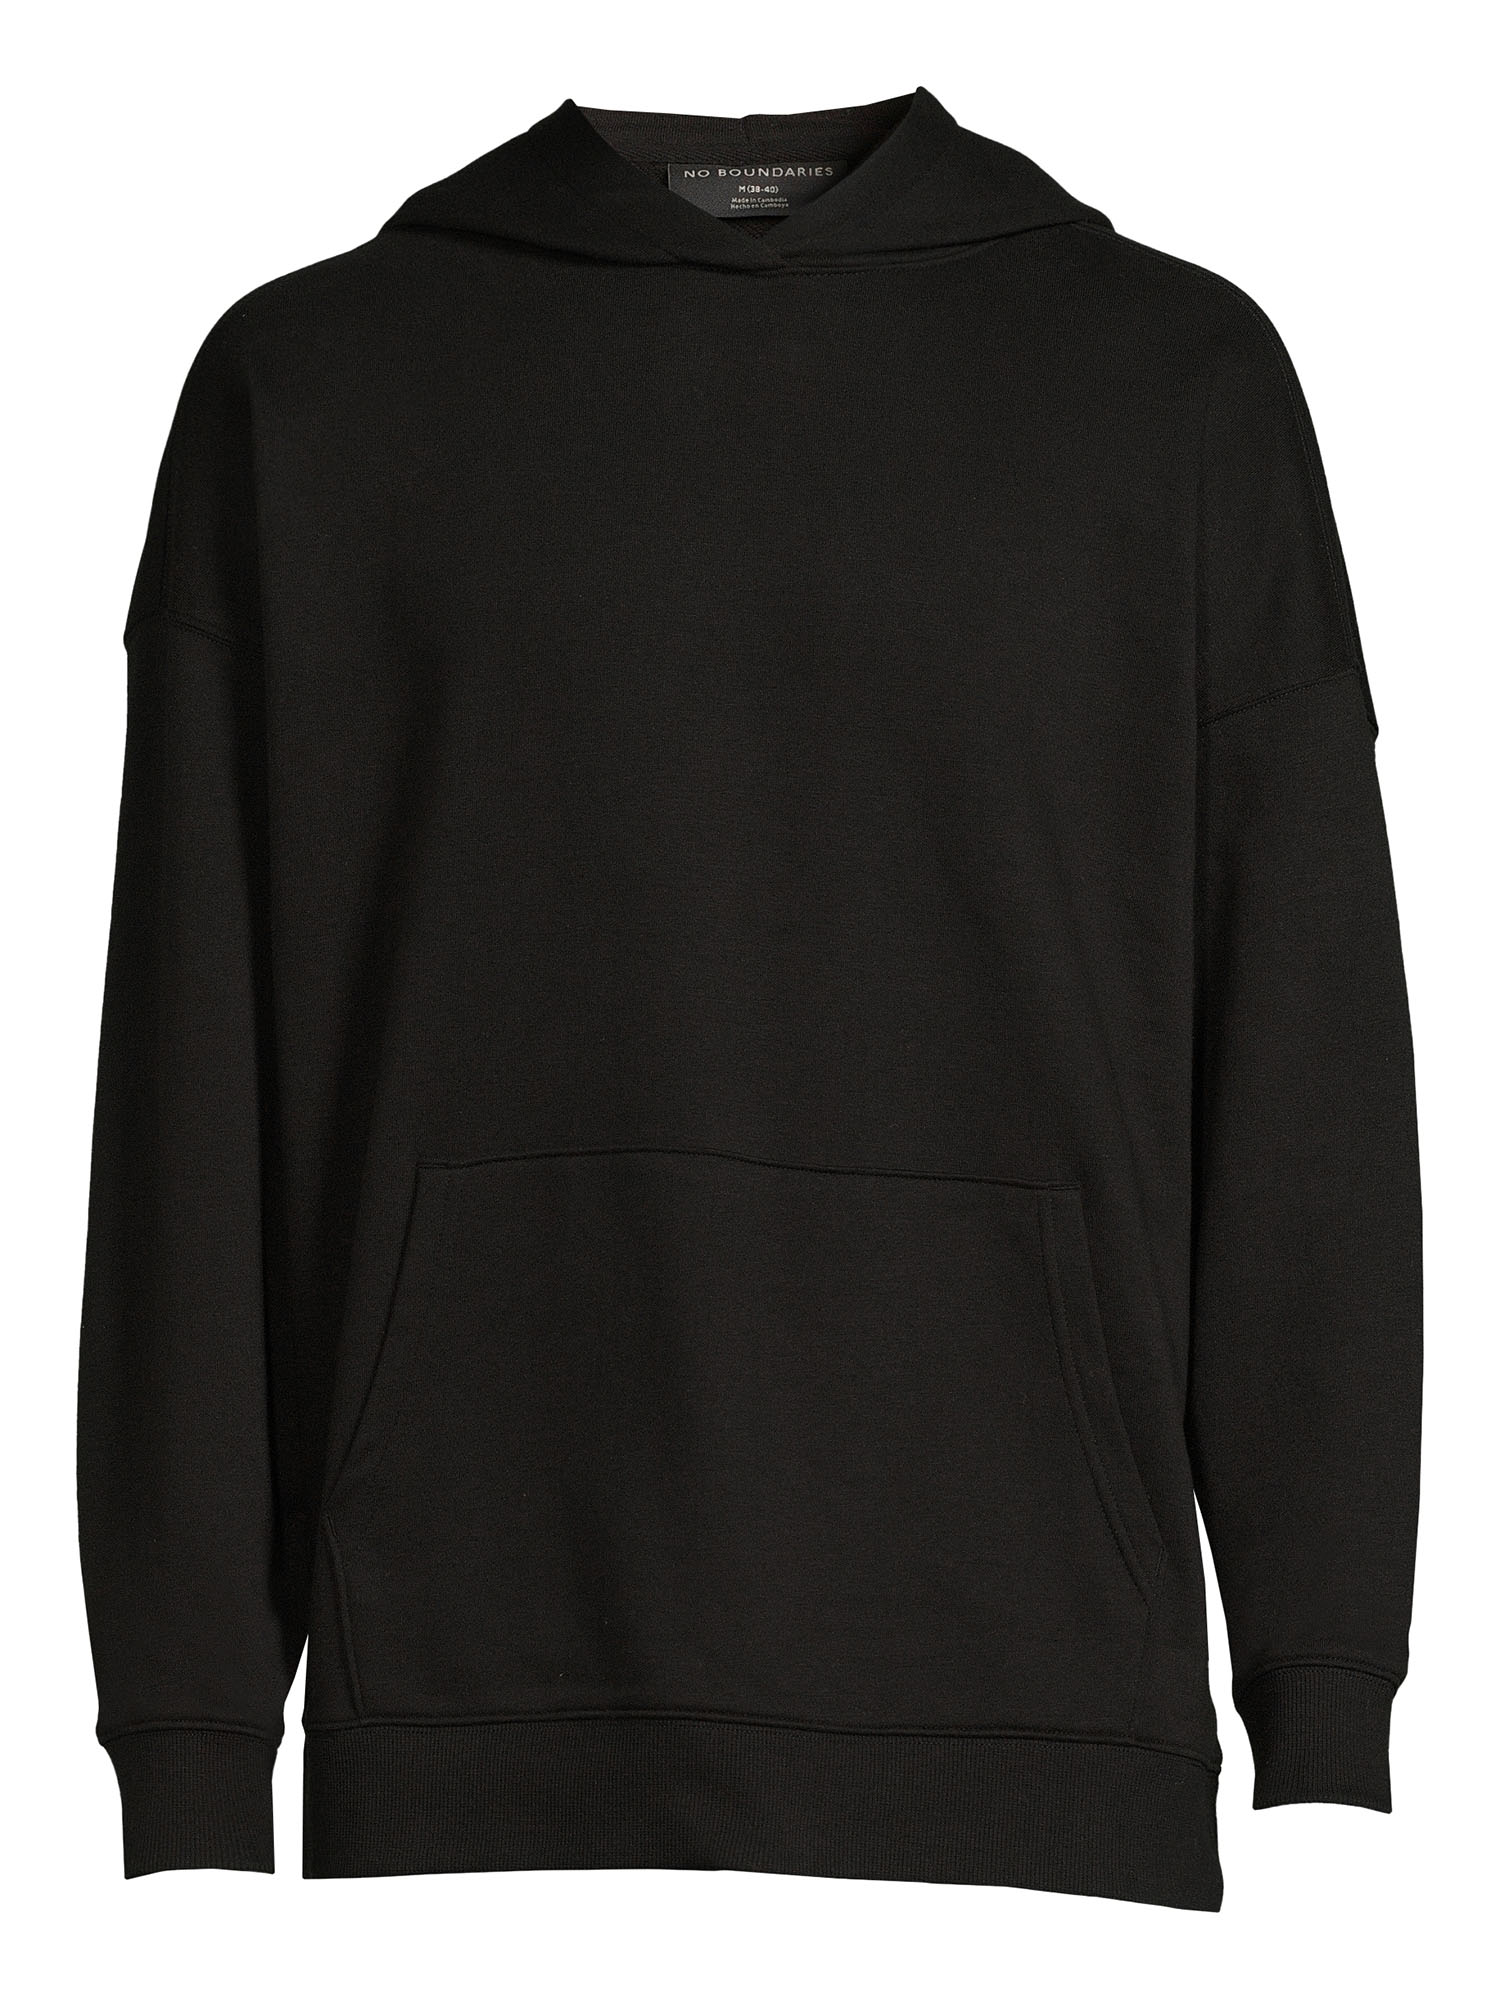 No Boundaries All Gender Fleece Hoodie Sweatshirt, Men's Sizes XS - 5XL - image 2 of 5